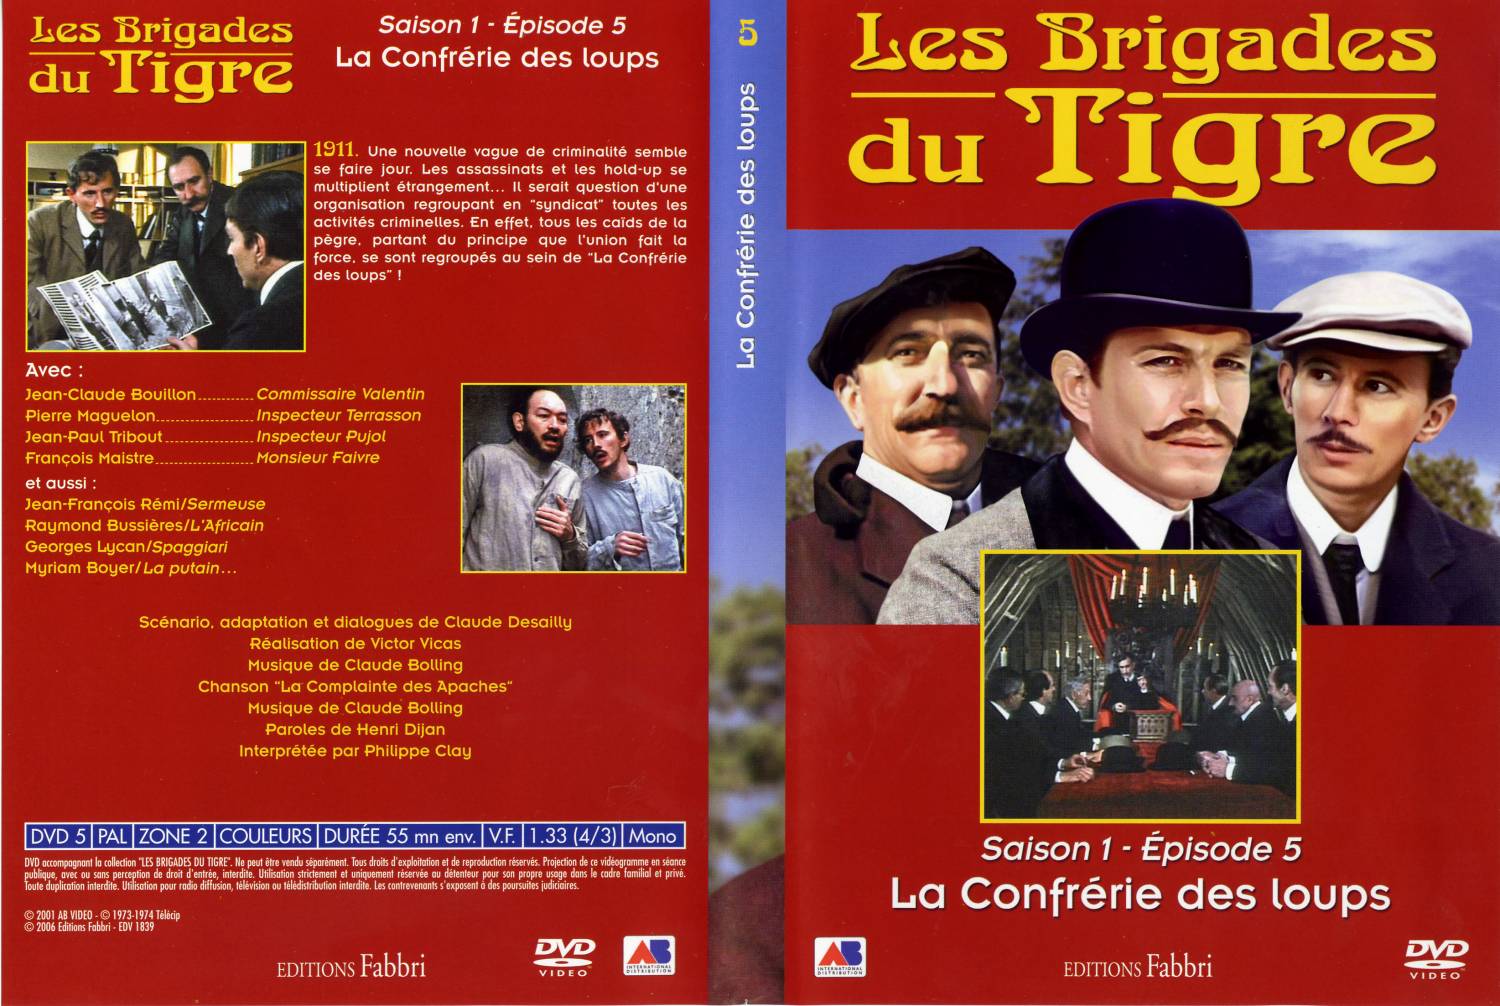 Jaquette DVD Les brigades du tigre saison 1 pisode 5